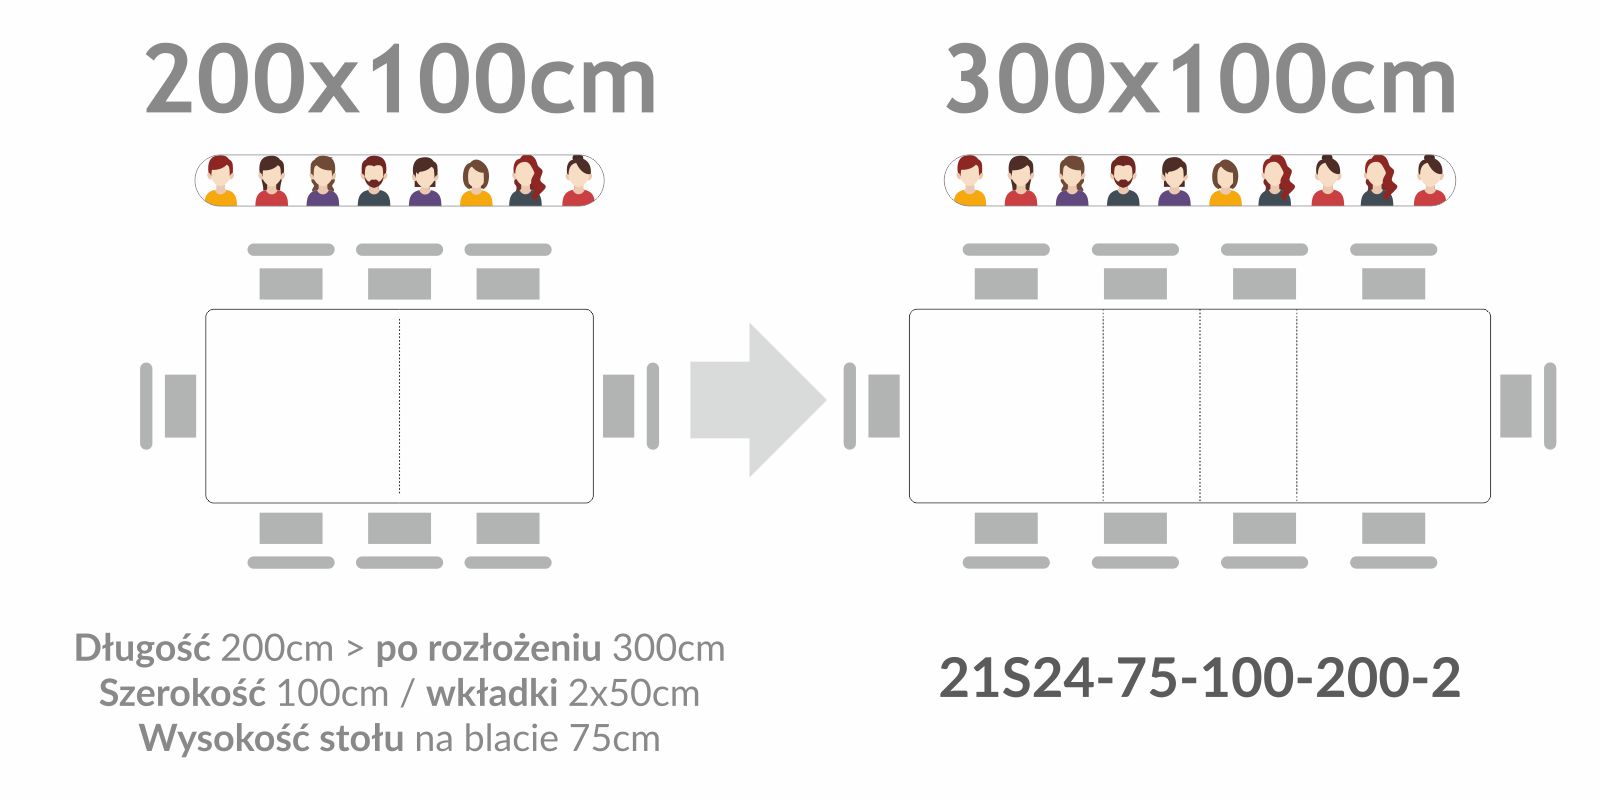 Stół S24 rozkładany 200/300x100cm wymiary stołu przed rozłożeniem 200x100cm to po rozłożeniu stół 300x100cm.